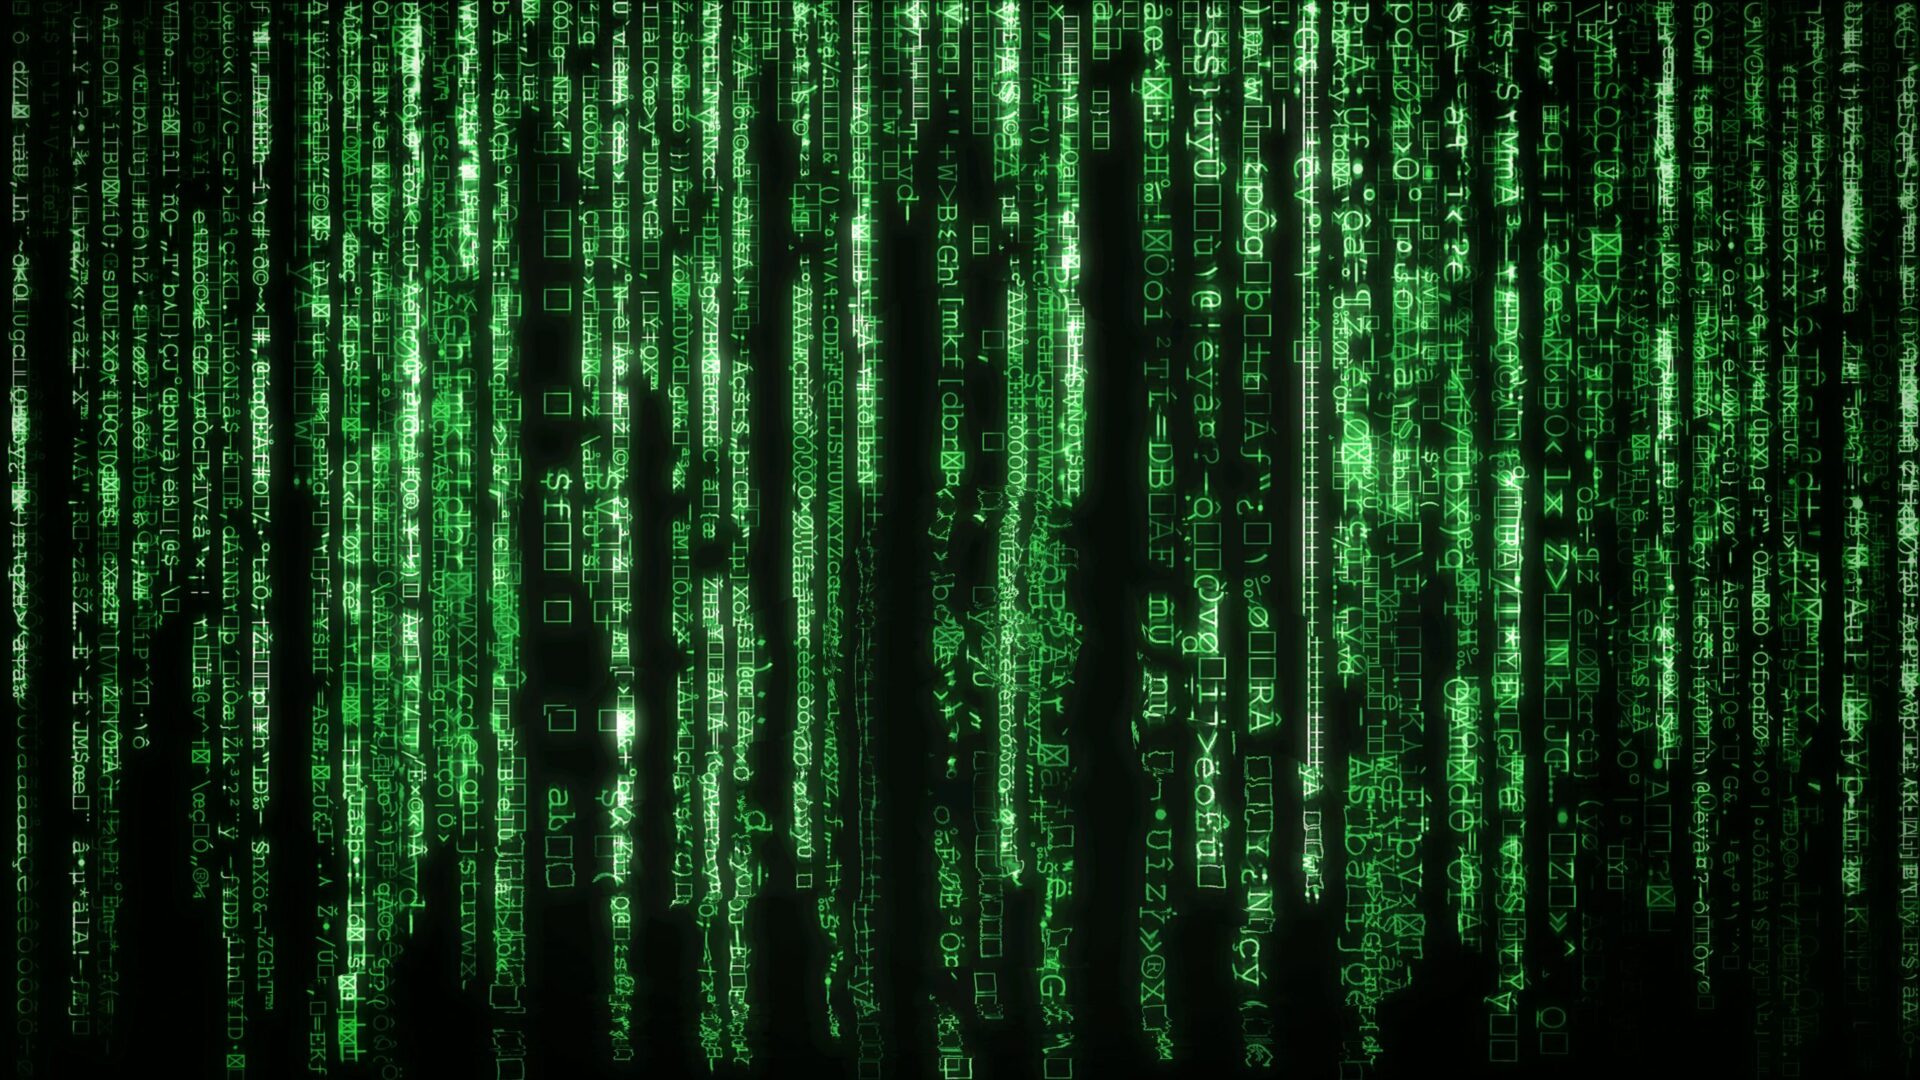 Photo of binary code